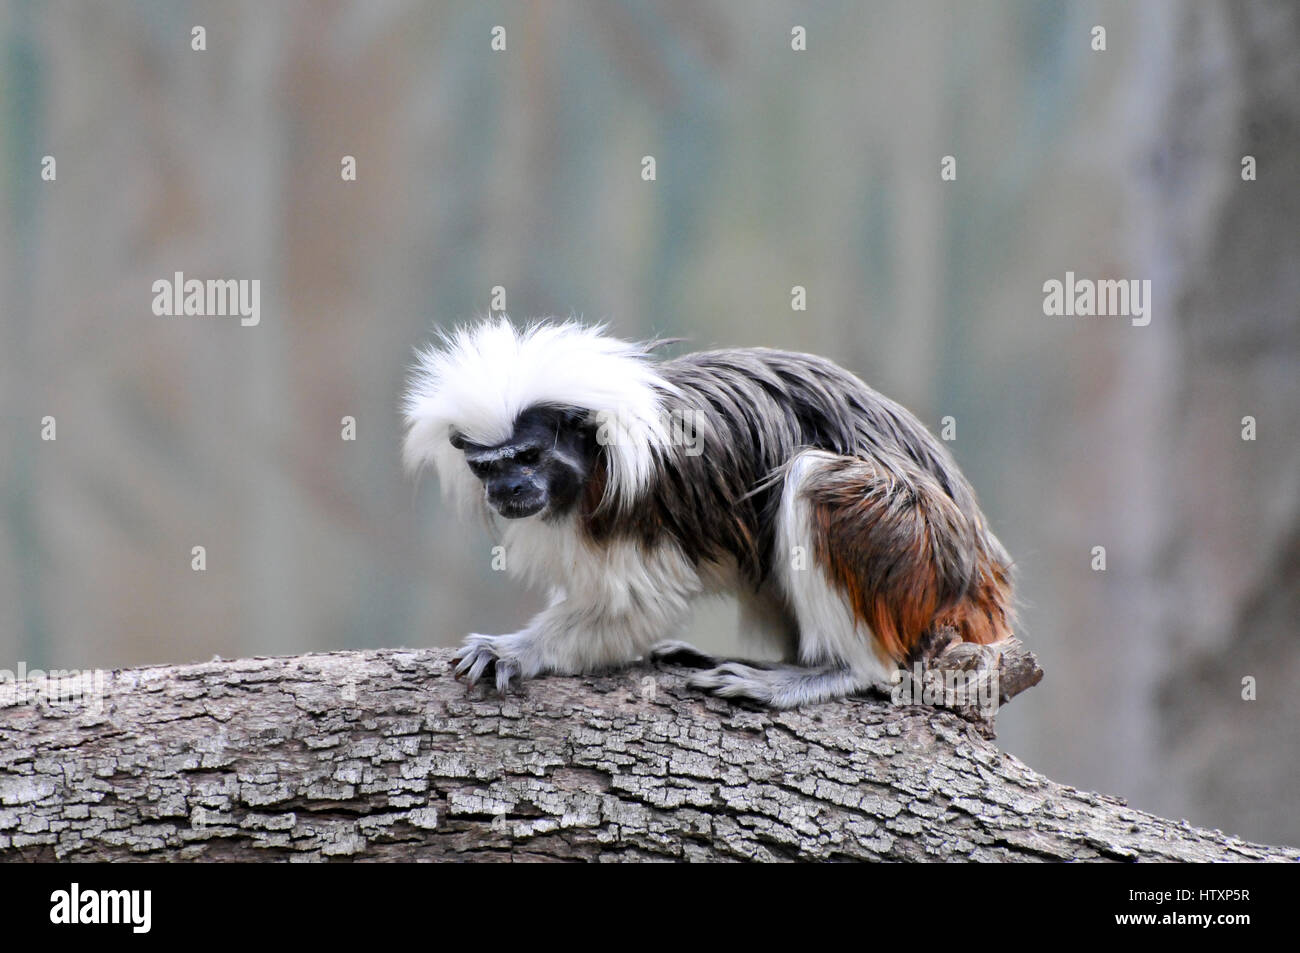 Baumwoll-Top Tamarin (Saguinus Oedipus). Einer der kleinsten Primaten der Baumwoll-Top Tamarin ist erkennbar durch die langen, weißen Scheitelkamm Ext Stockfoto